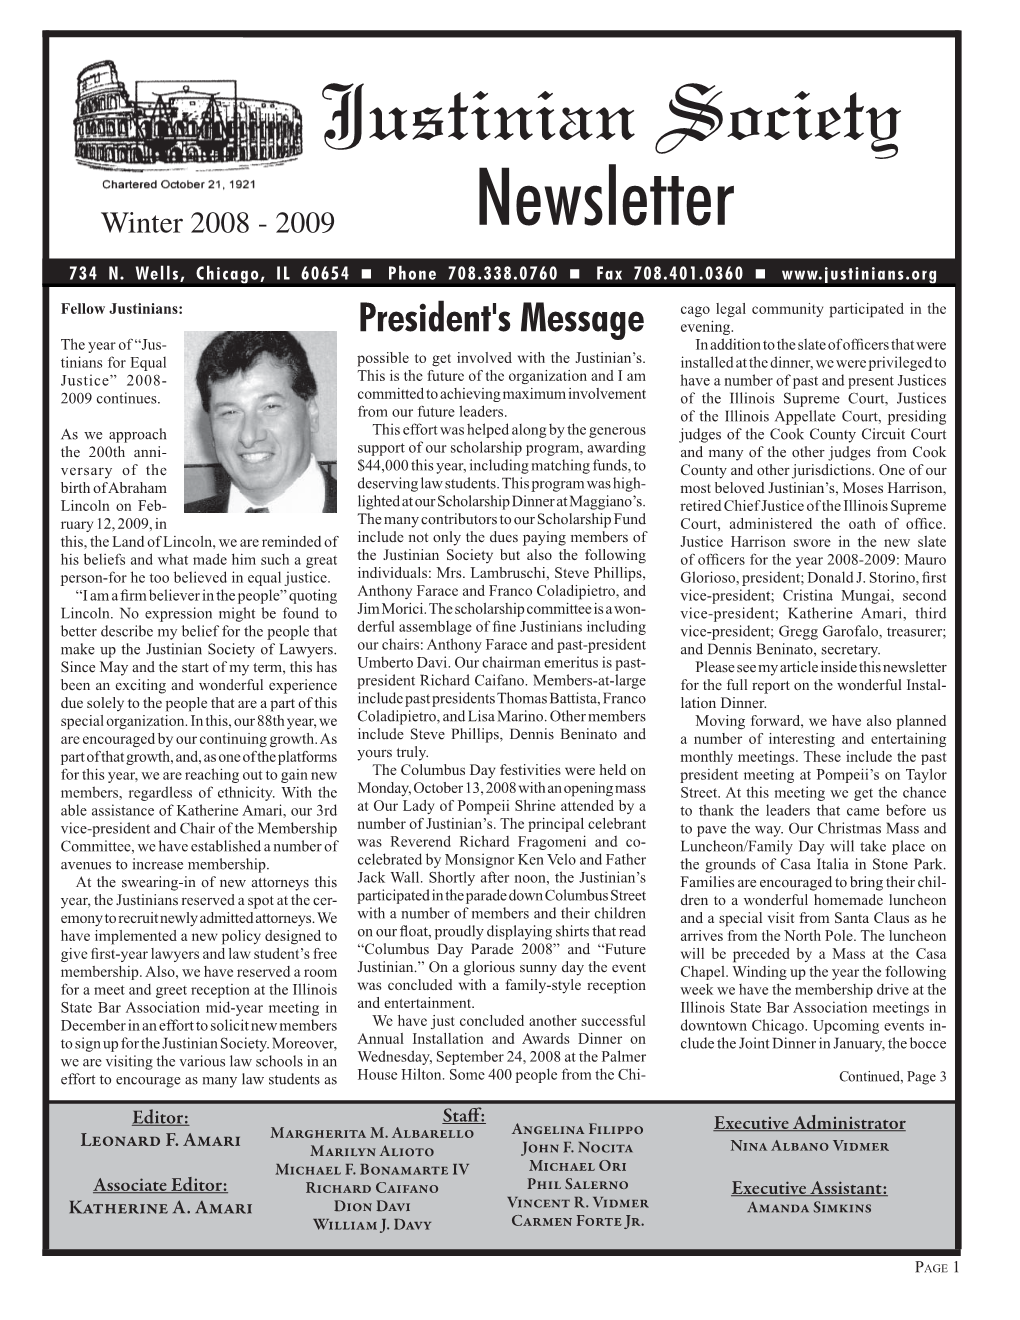 Winter 2008 - 2009 Newsletter